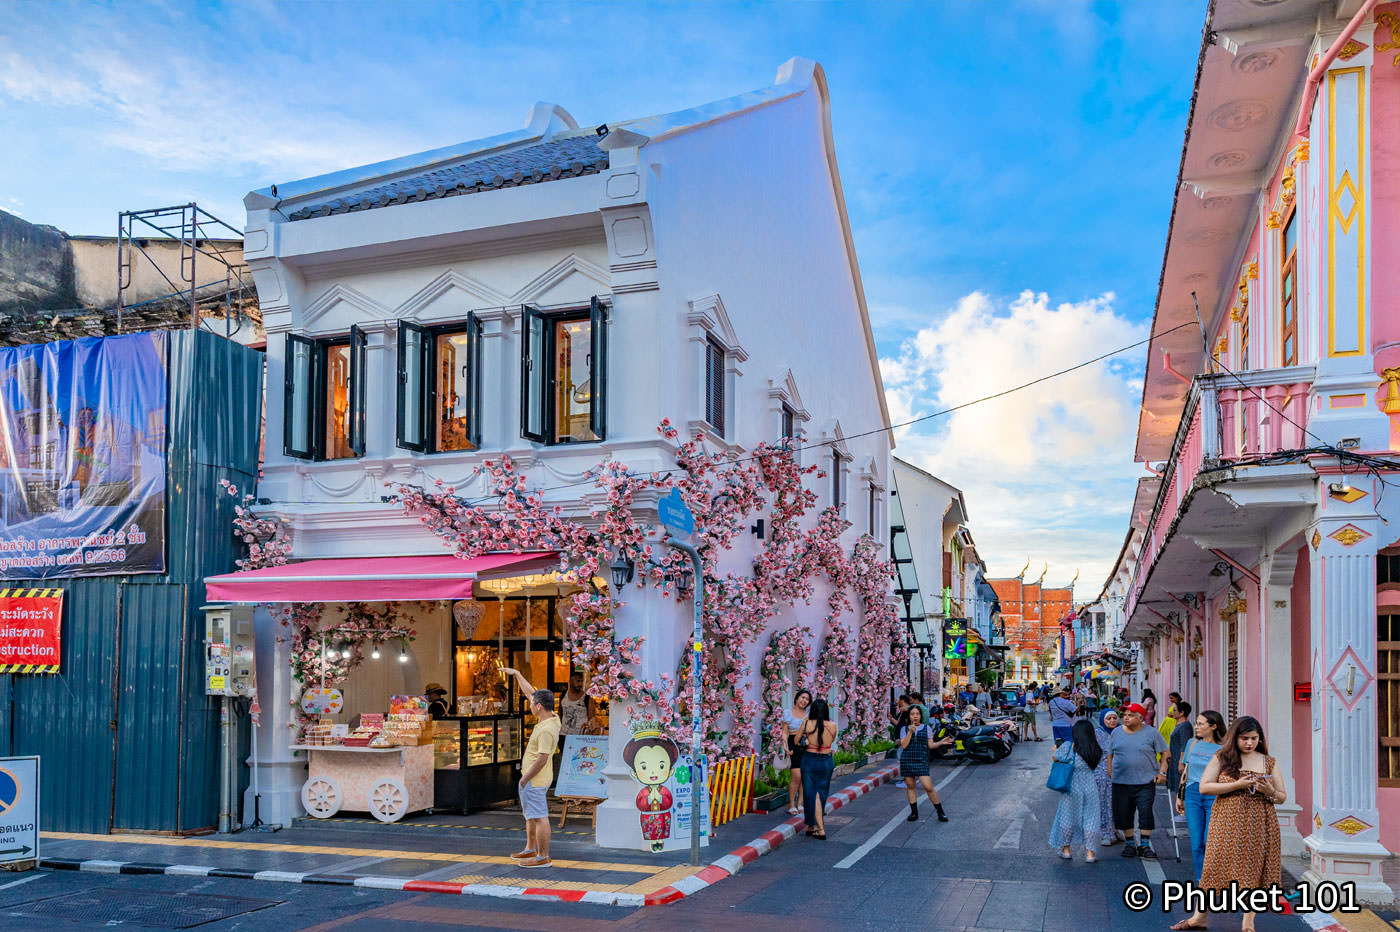 That one street in Phuket 🔥🔥 Soi Ta-iad ซอยตาเอียด aka The Soi